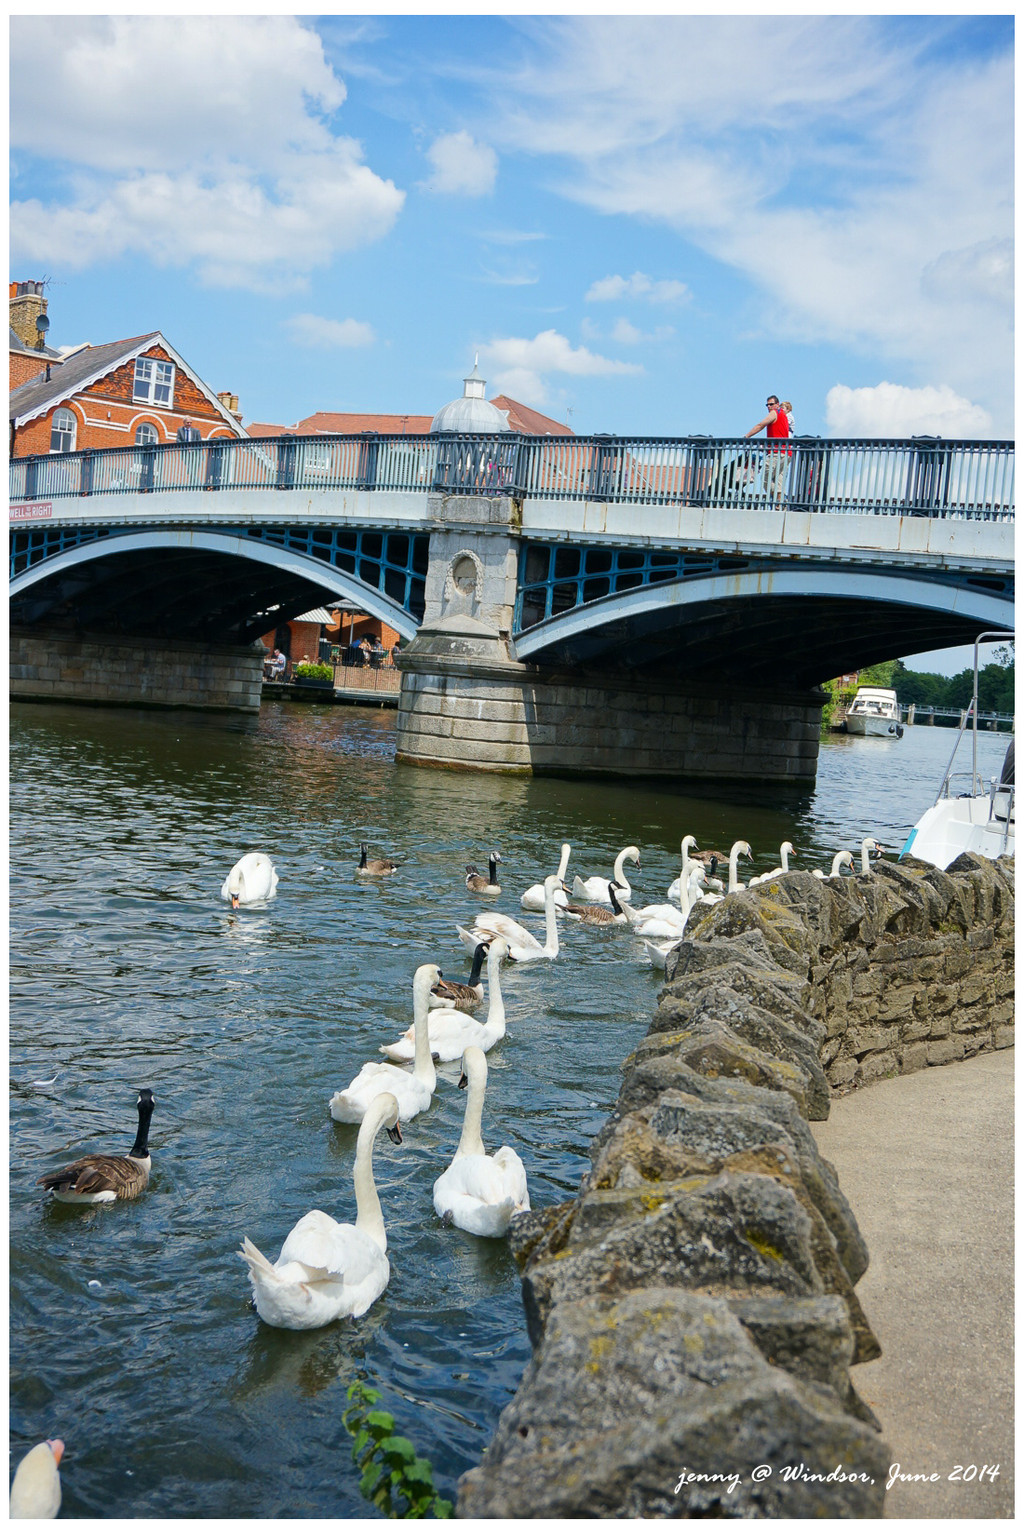 去往公学的路上经过一座美丽的桥，桥下河中有好多女王的天鹅啊，好自在！（英国法律将泰晤士河特定流域和其